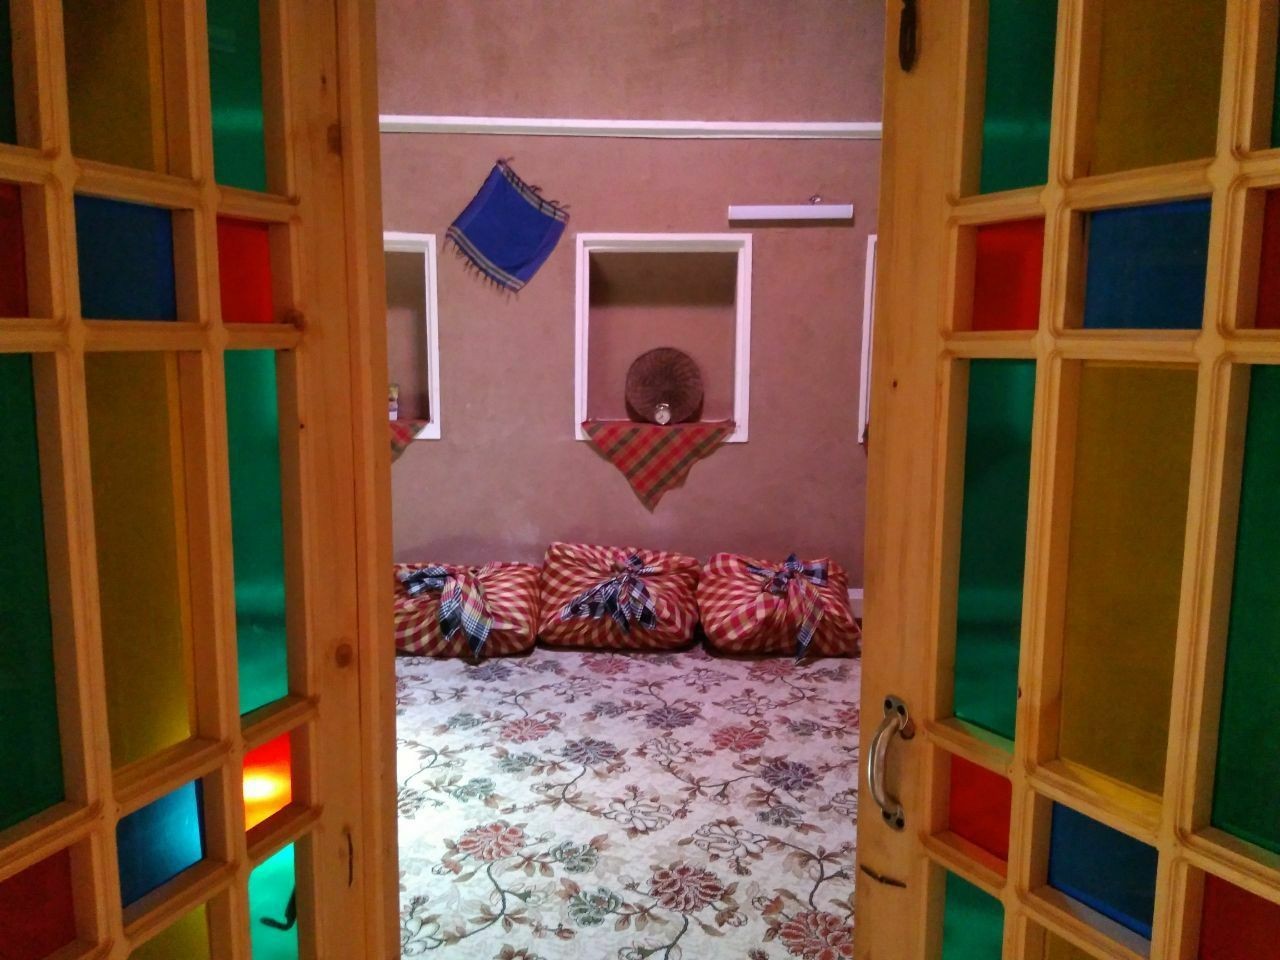 بوم گردی اجاره اقامتگاه بوم گردی سنتی در شاهدیه یزد | باباخداداد 7